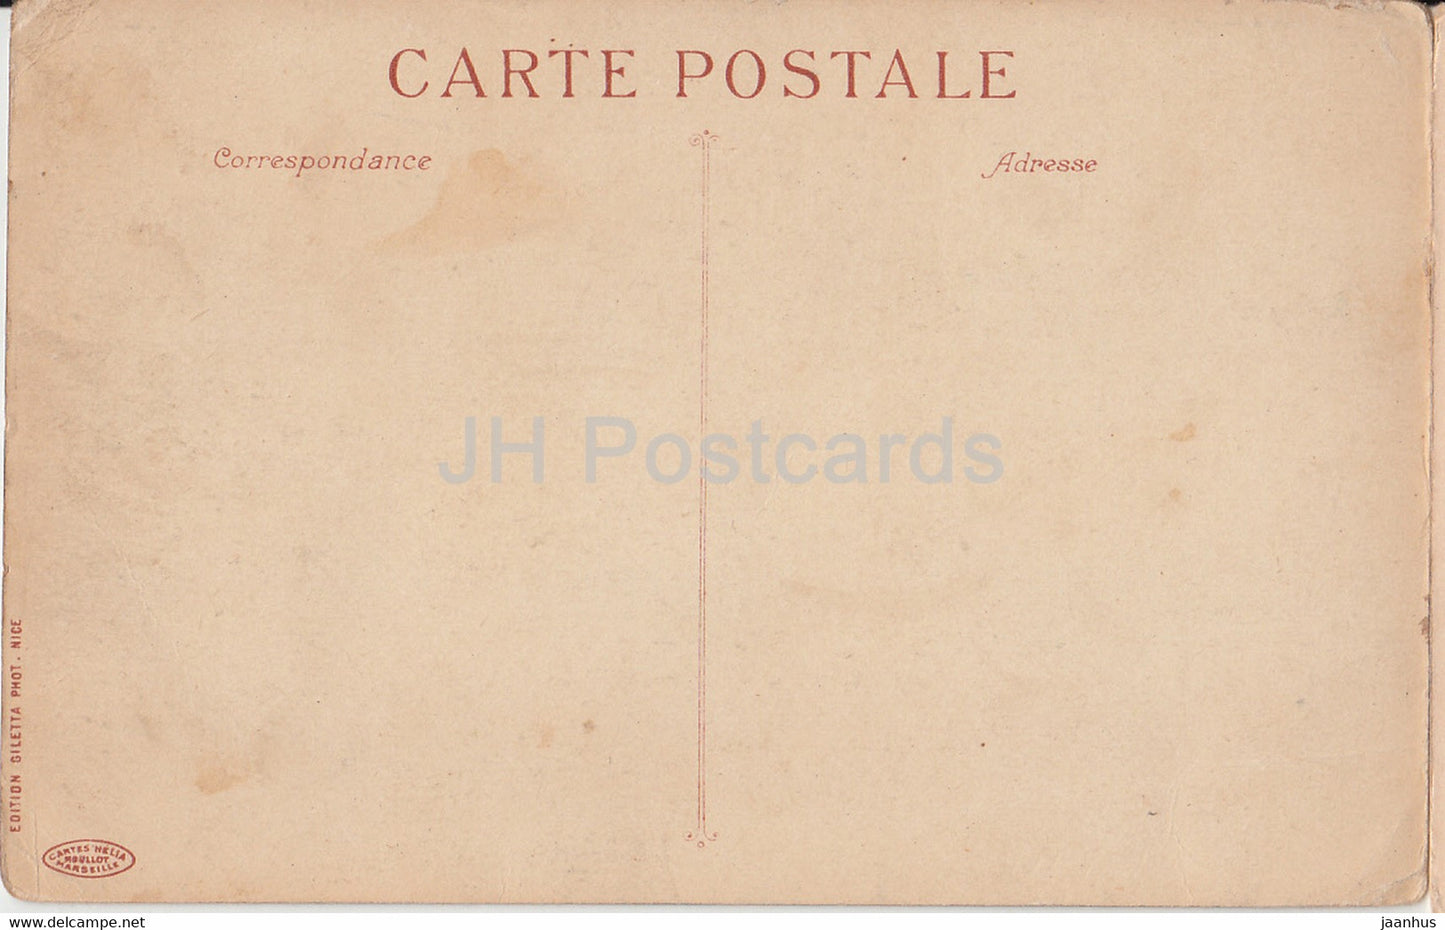 Côte d'Azur - un vol d'oiseau de Menton à Cannes - 2 - carte postale ancienne - France - inutilisée